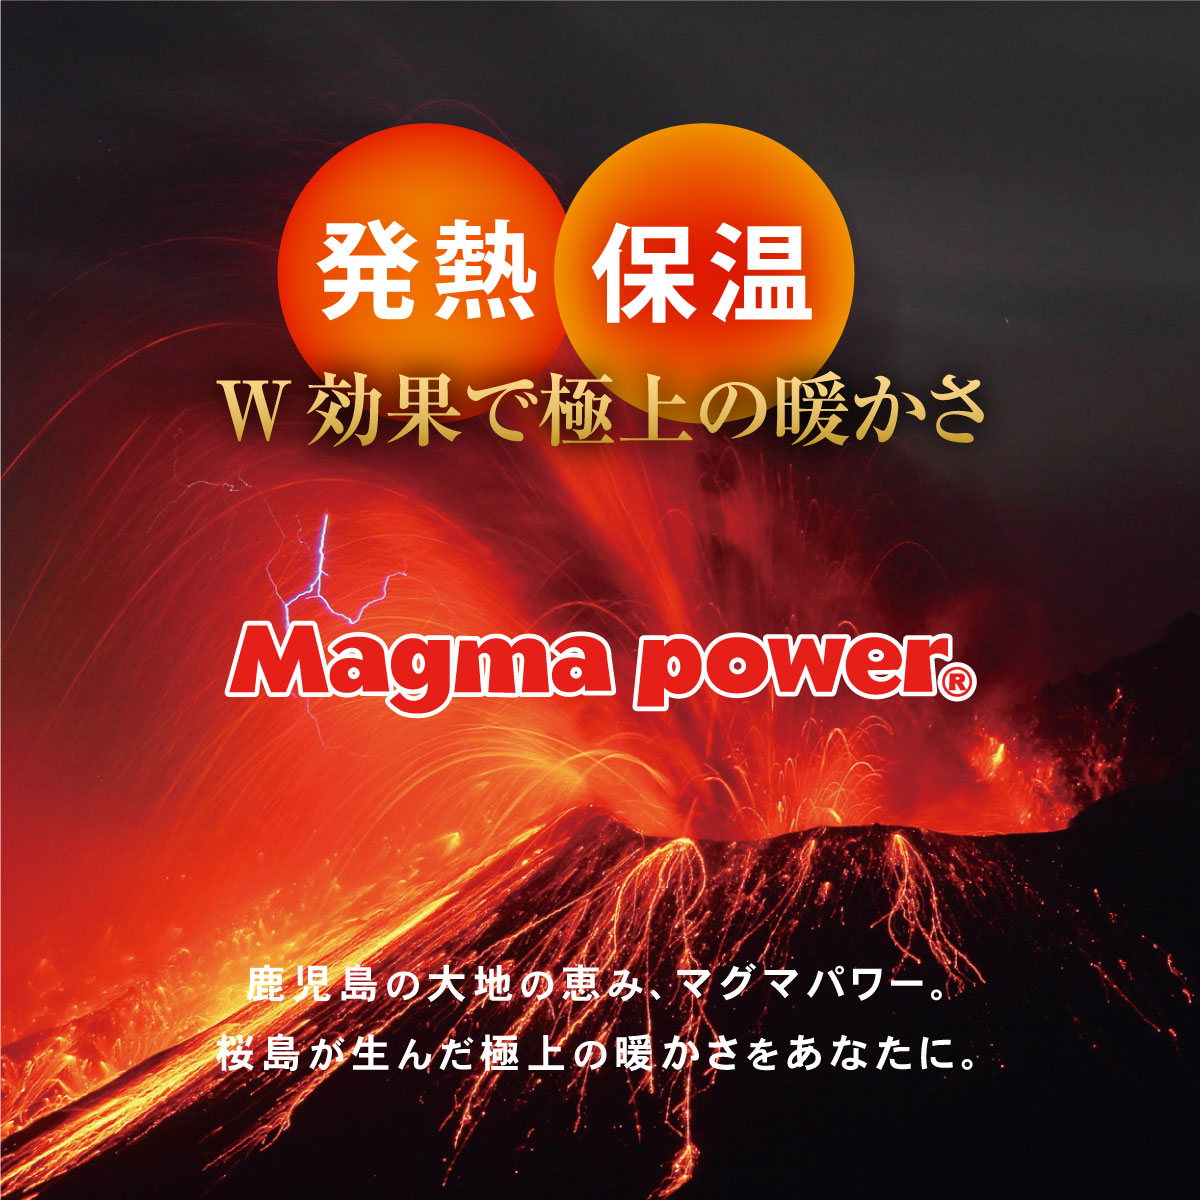 鹿児島の大地の恵み、マグマパワー。桜島が生んだ極上の暖かさをあなたに